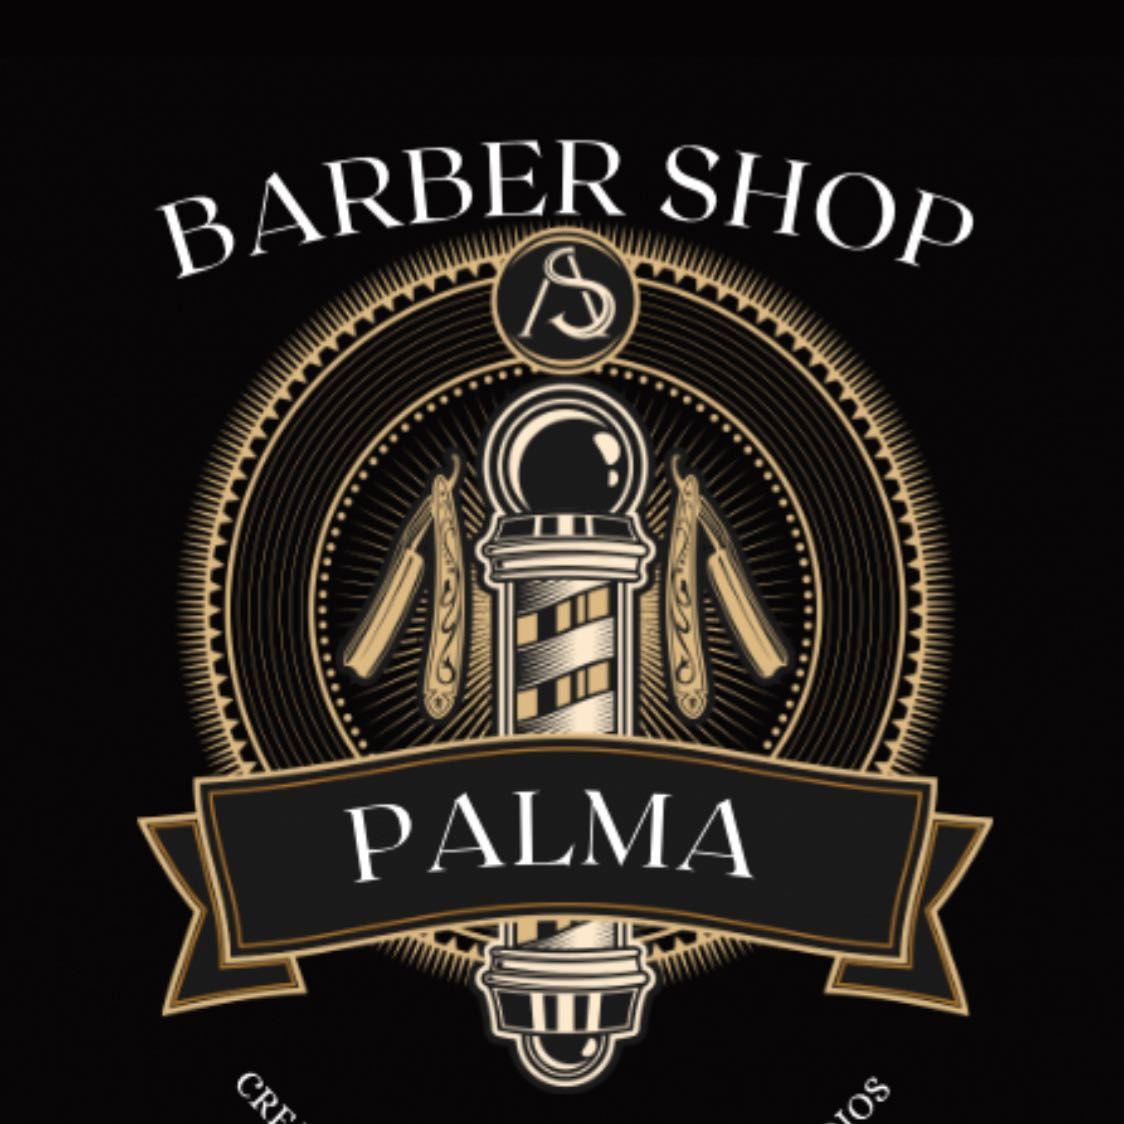 Barber shop Palma, Paseo maragall 188, Paseo maragall 188, 08031, Barcelona